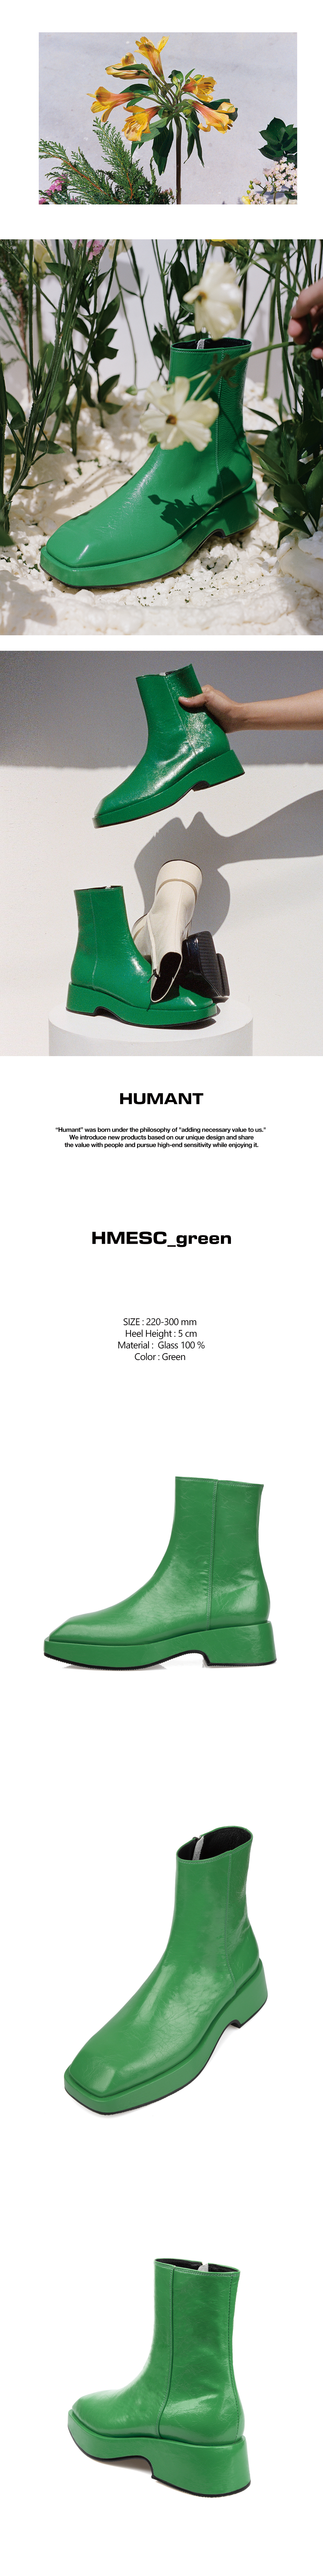 HMESC002_green